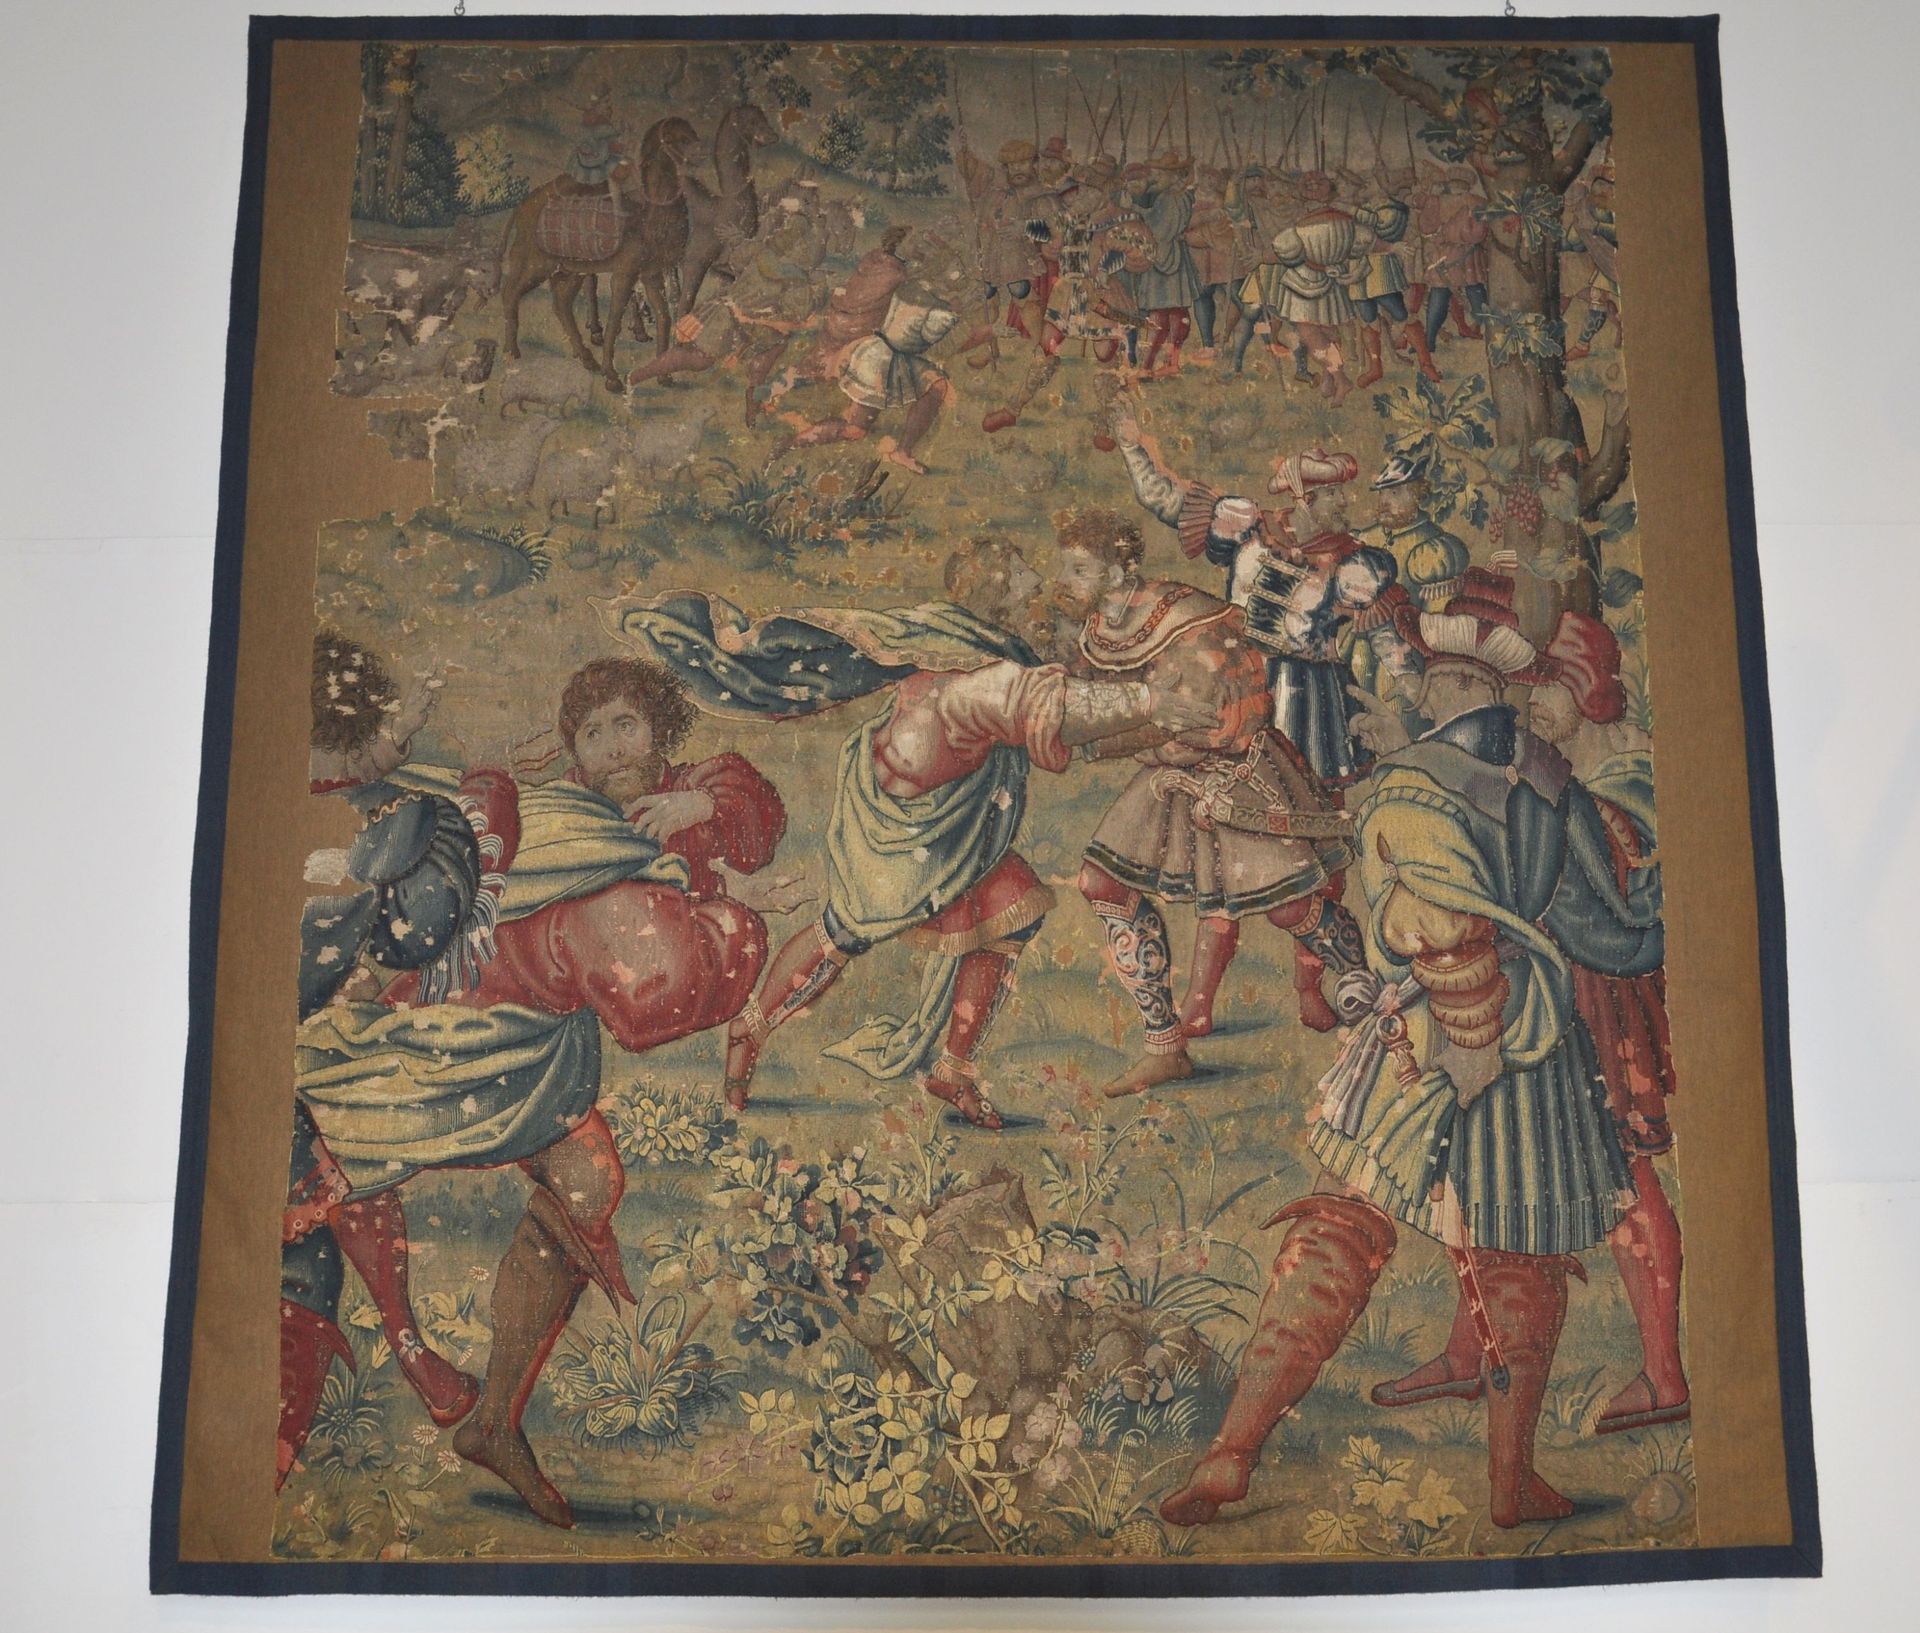 Les tapisseries dites de "L'Histoire de Jacob" de l'atelier du tapissier bruxellois Willem de Kempeneer.